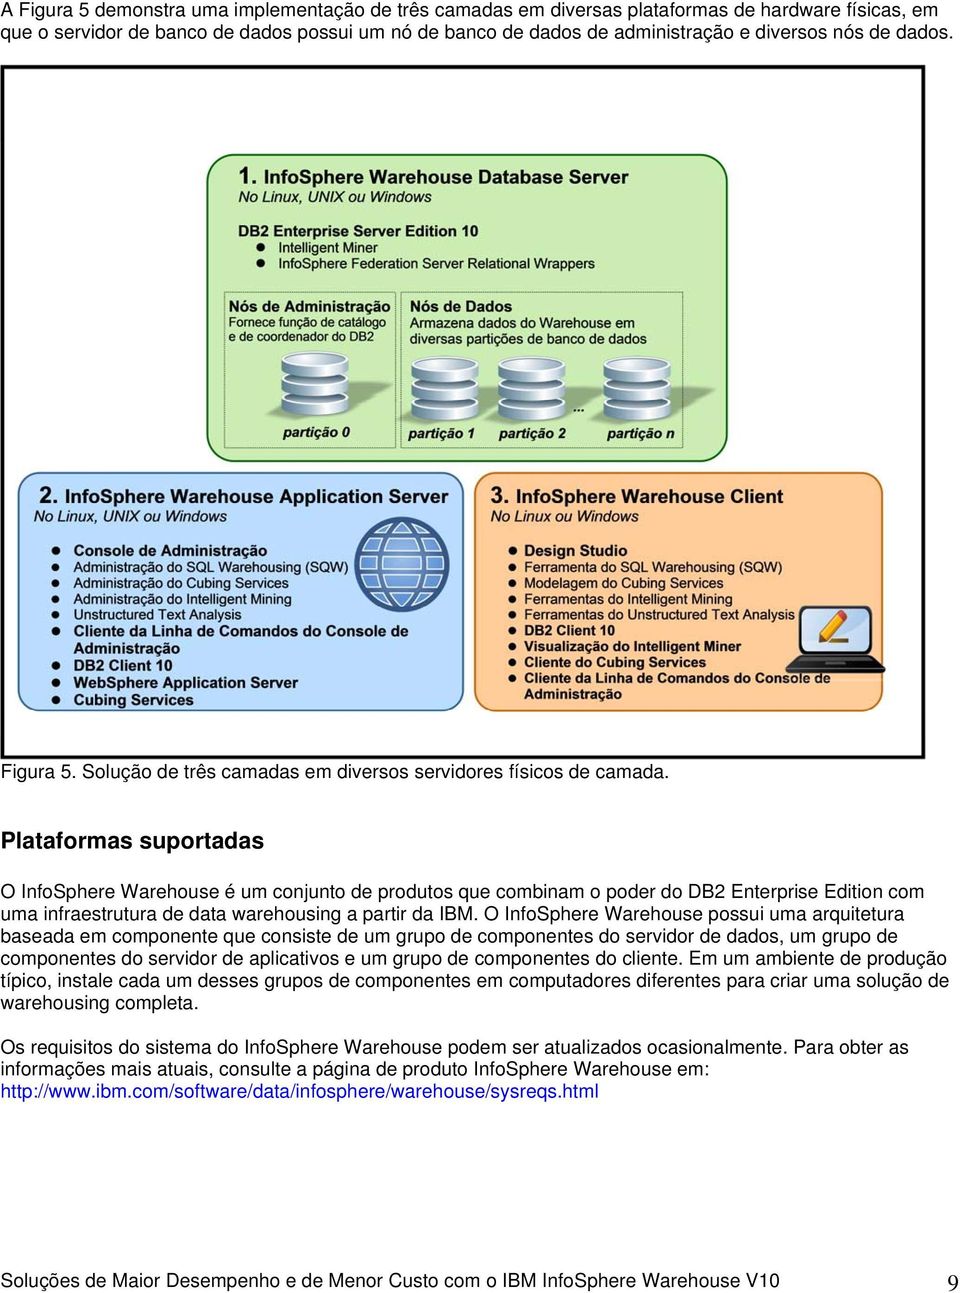 Platafrmas suprtadas O InfSphere Warehuse é um cnjunt de prduts que cmbinam pder d DB2 Enterprise Editin cm uma infraestrutura de data warehusing a partir da IBM.